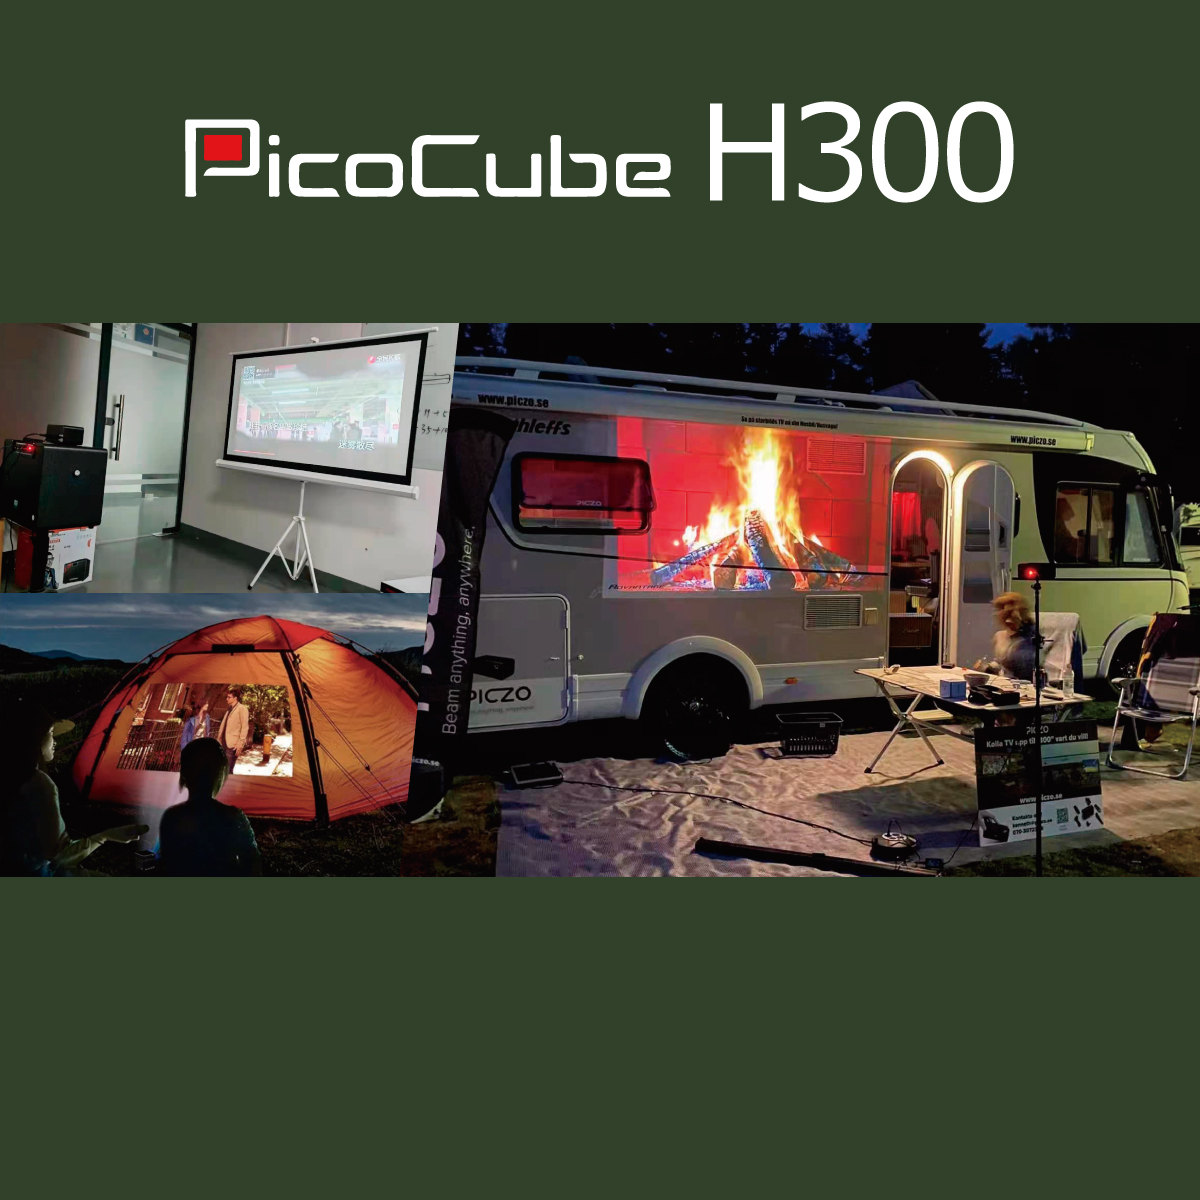 PicoCube H300 モバイルプロジェクター-